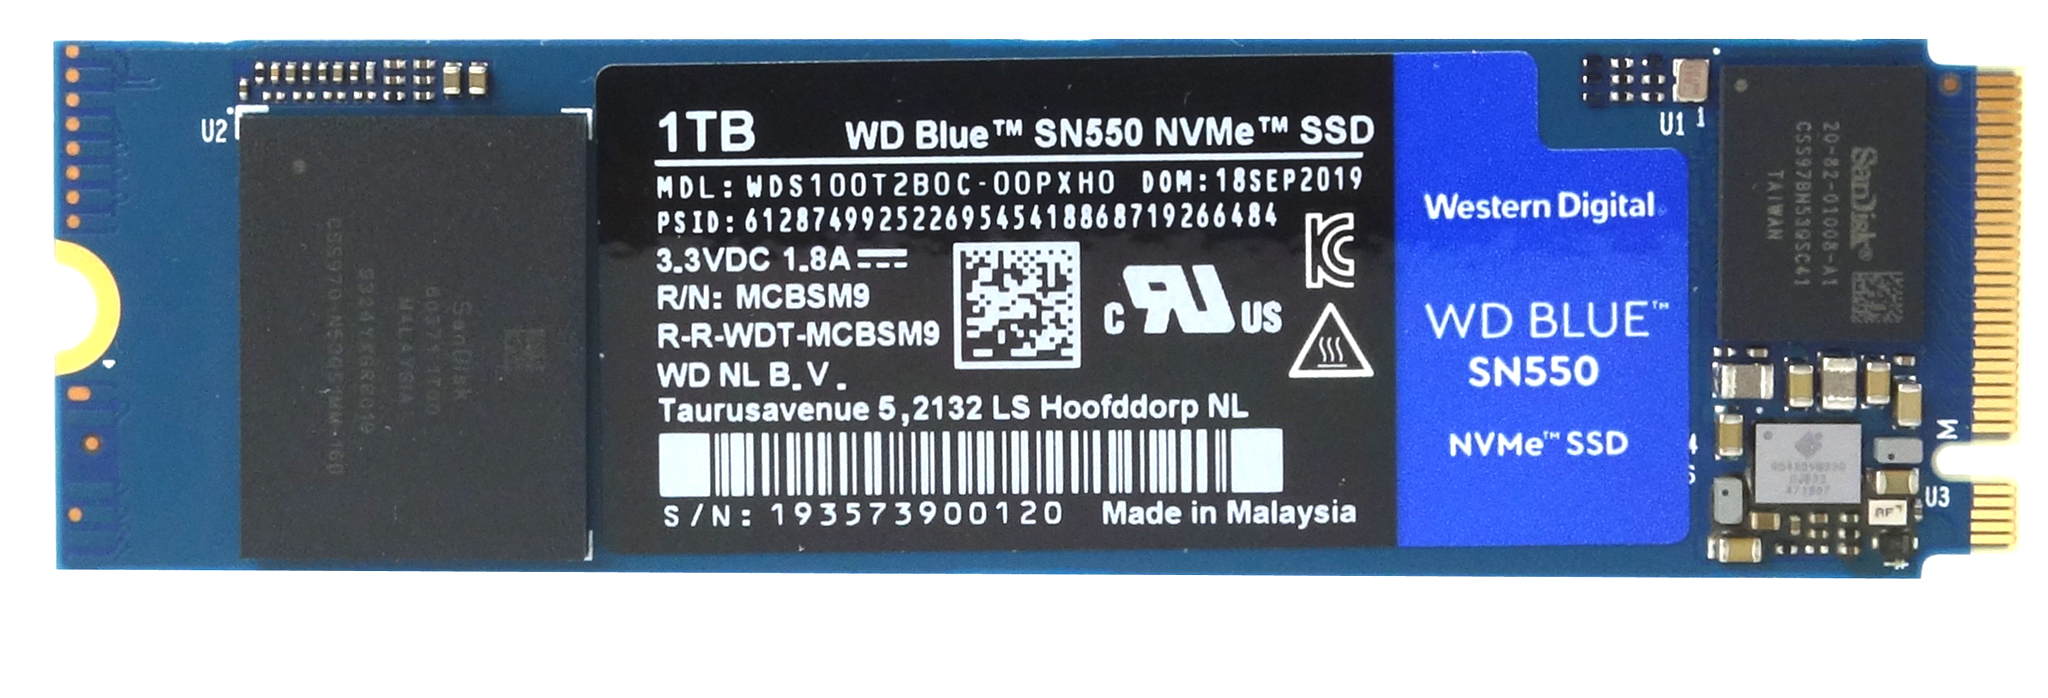 WD Blue SN550 1TB SSD Review | KitGuru- Part 2